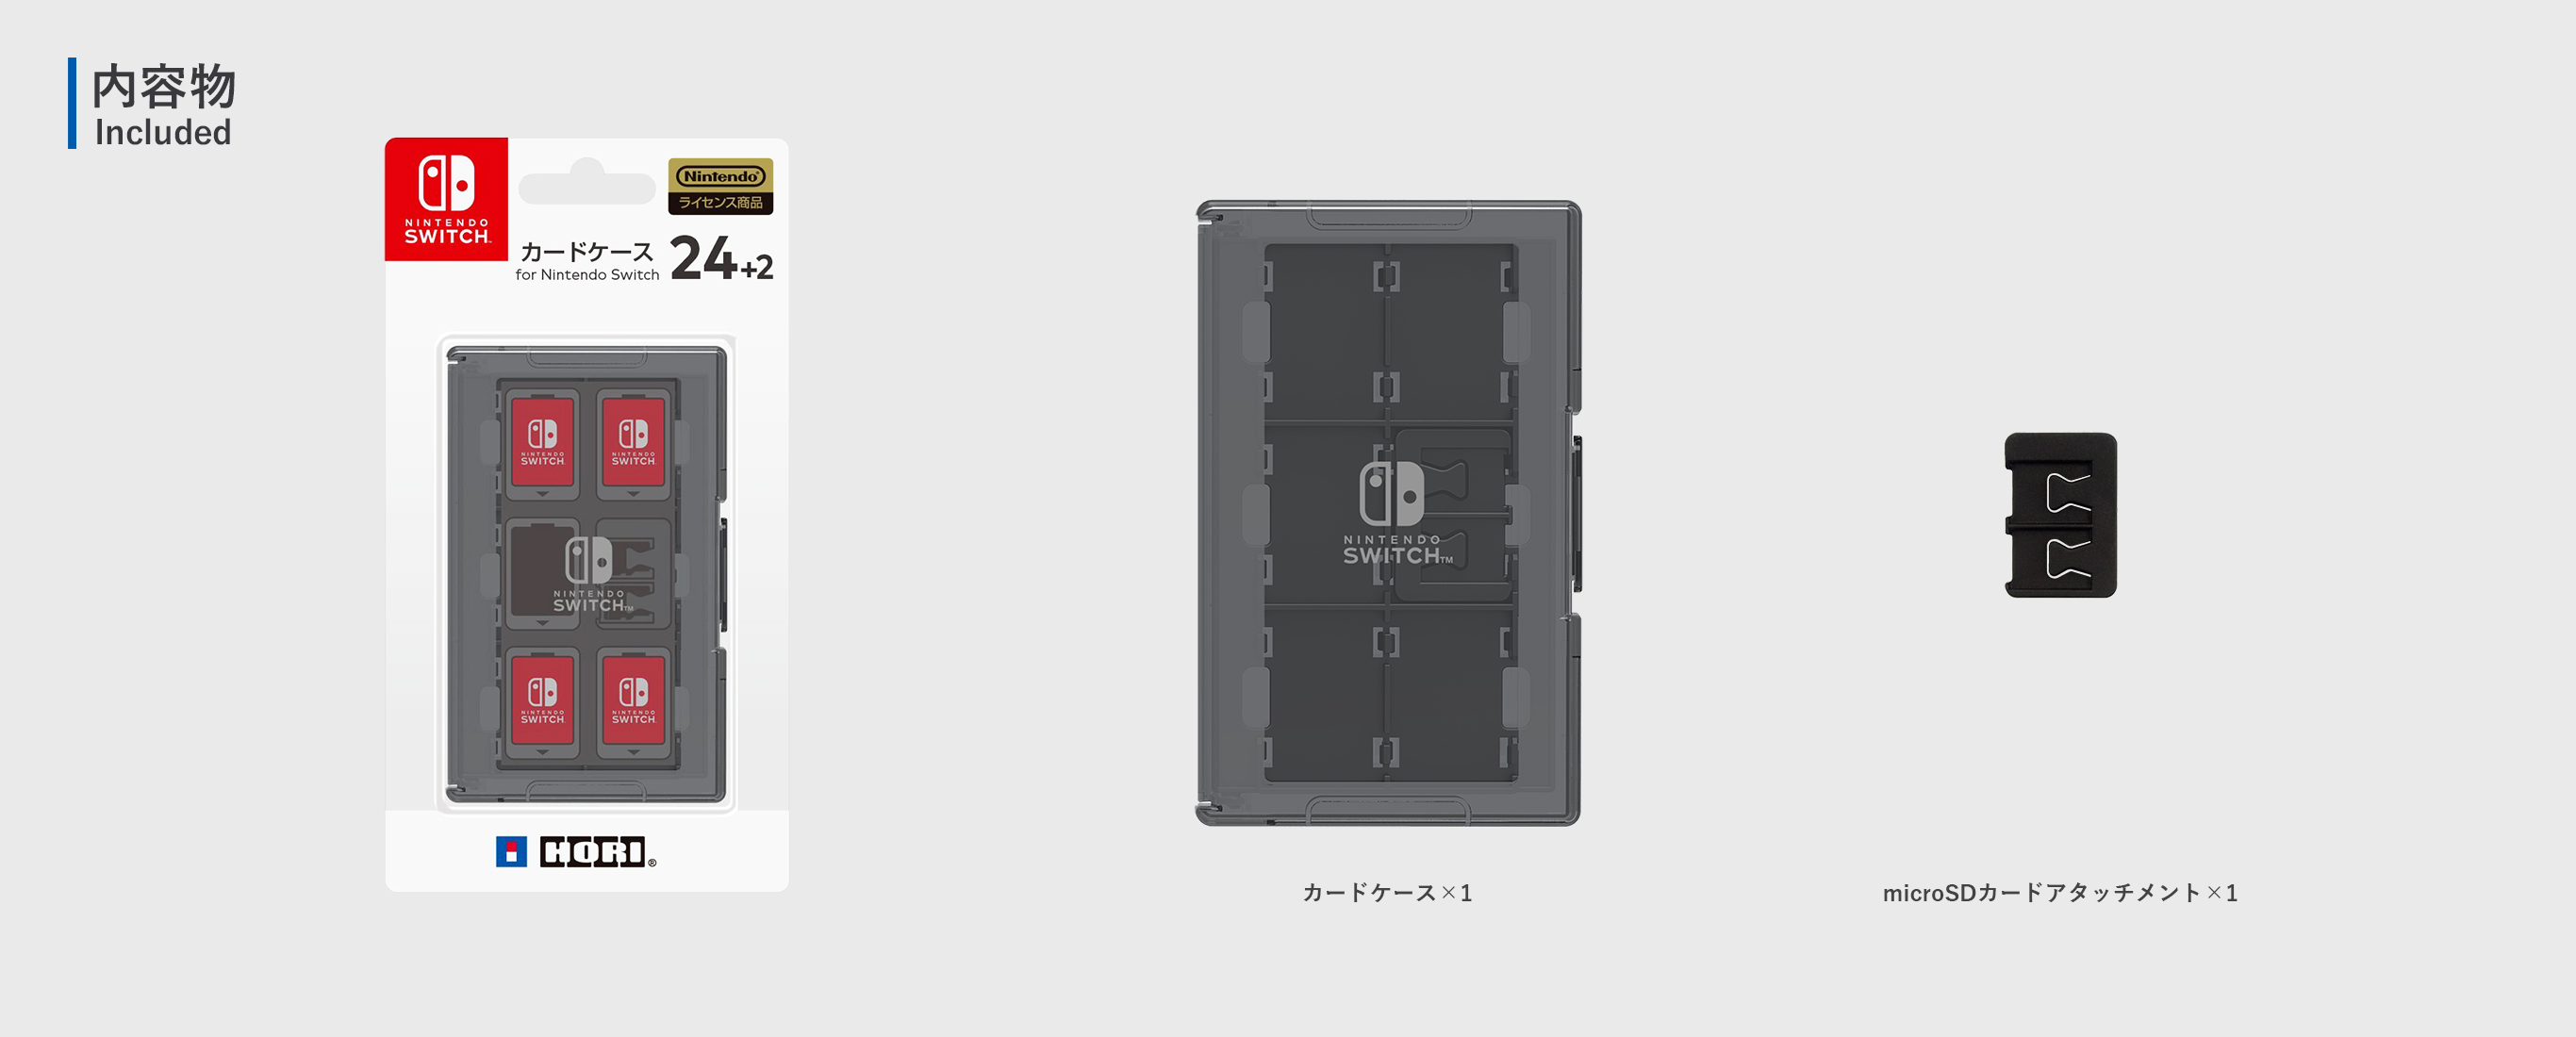 株式会社 Hori カードケース24 2 For Nintendo Switch ブラック